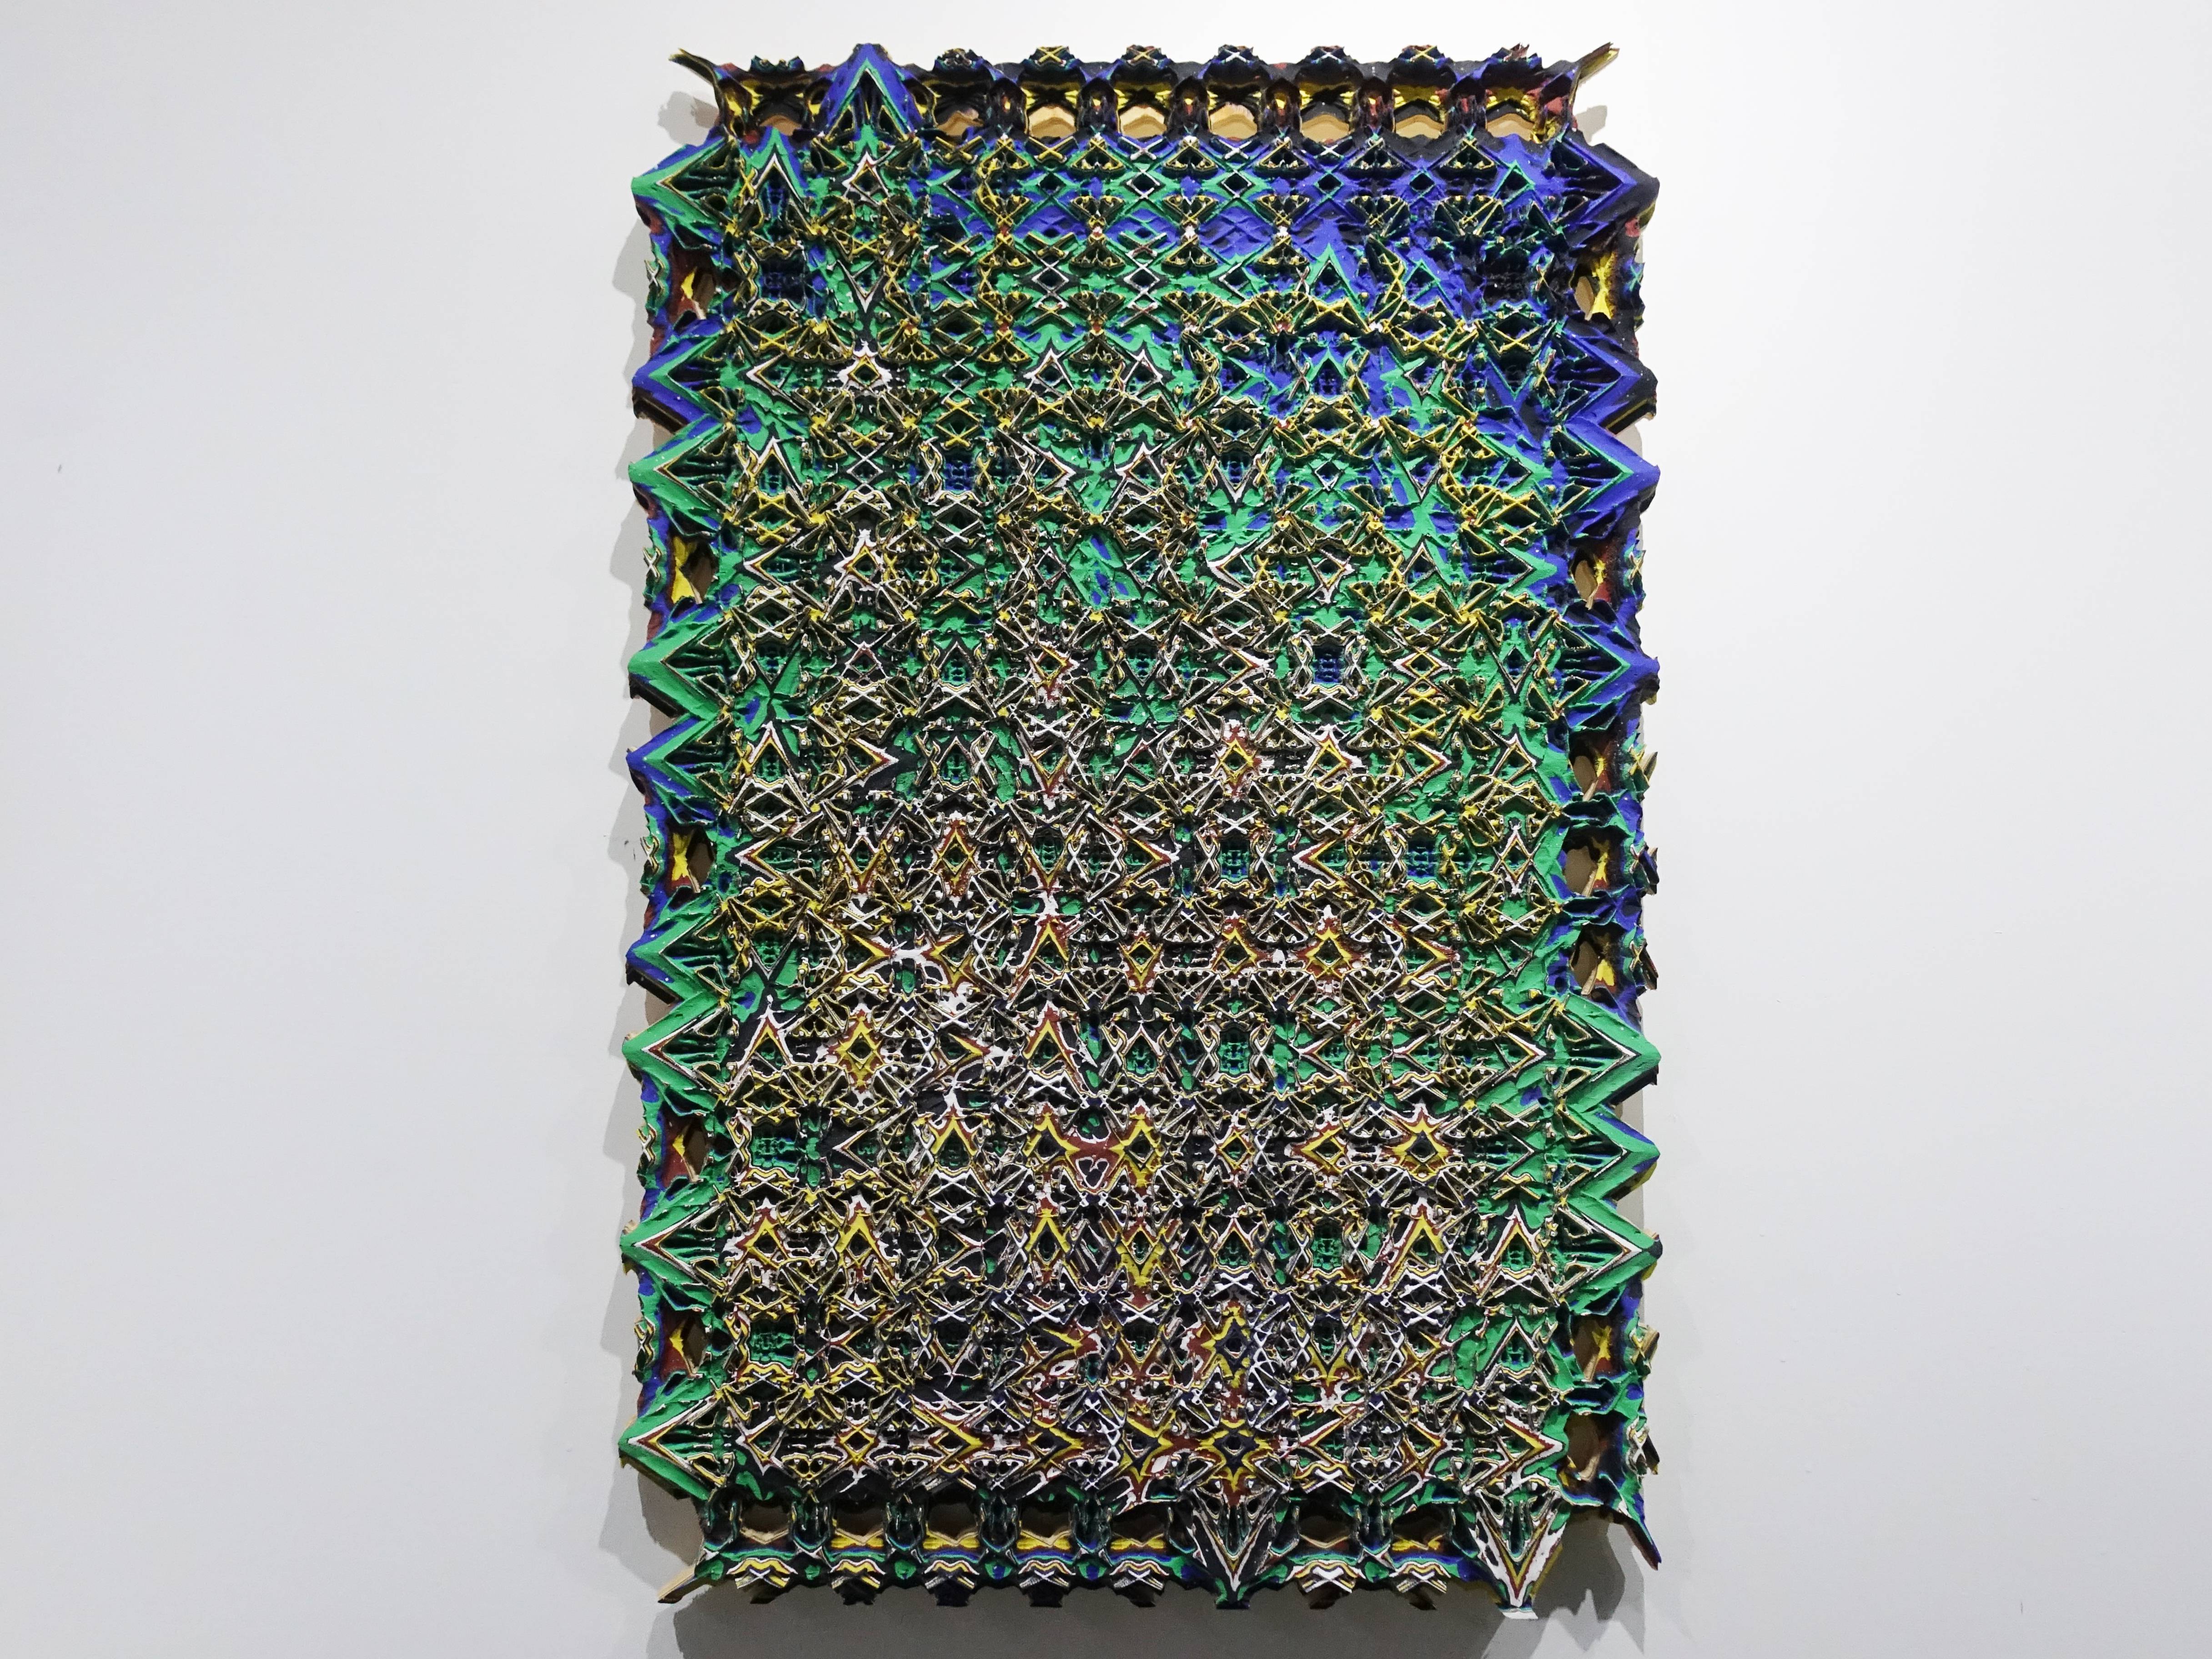 歐勁，《無題-141》，60 x 40 cm，木板、丙烯、綜合材料，2019。